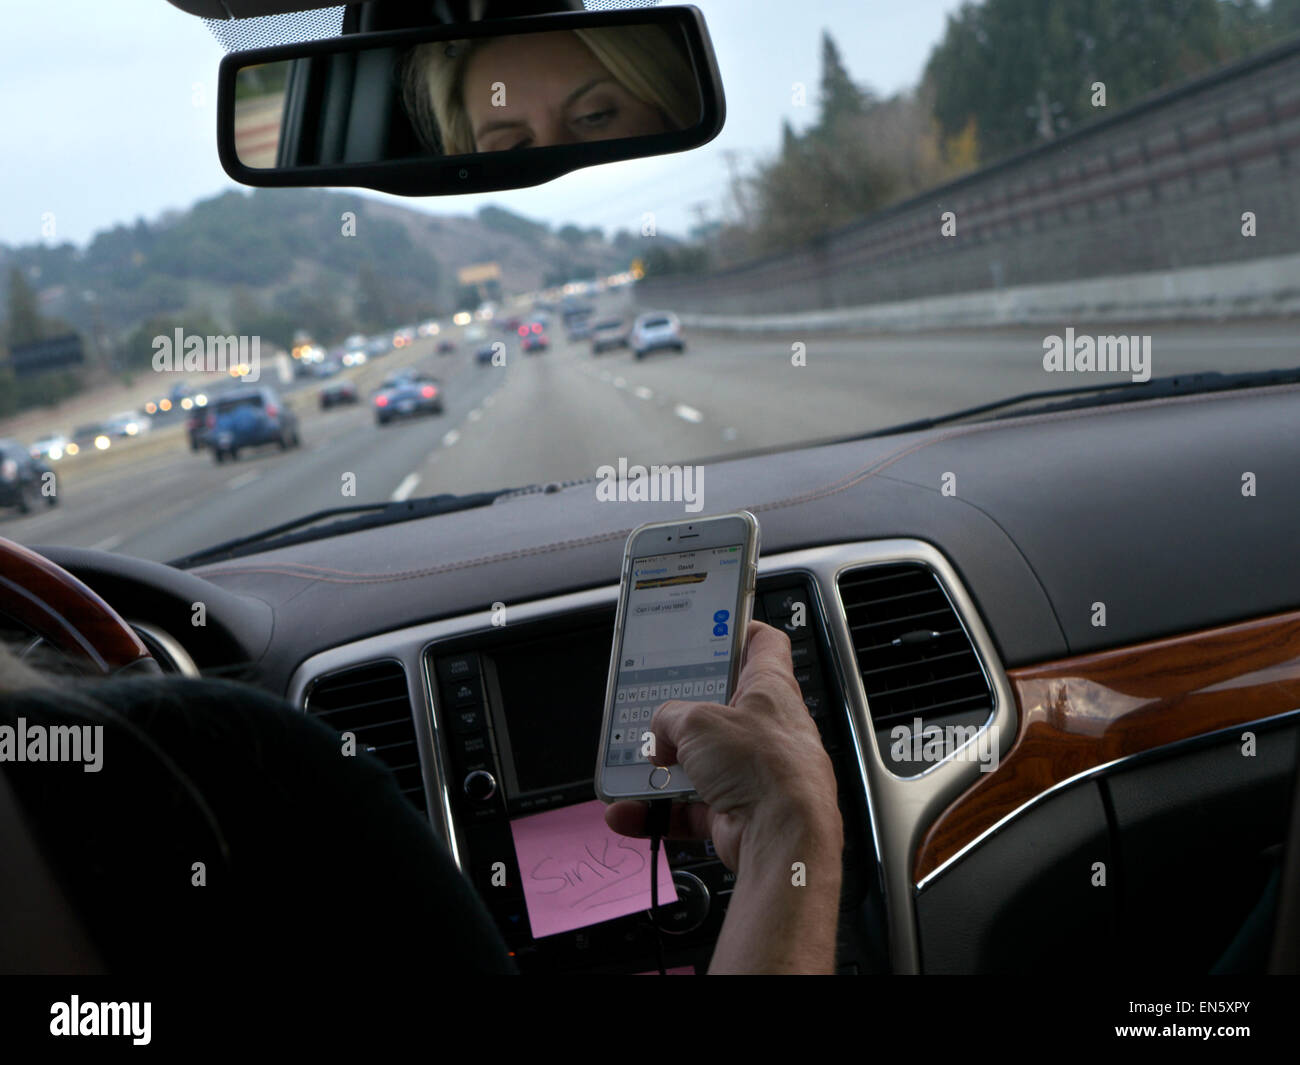 TEXTING FAHREN USA weibliche Fahrer in l/h Fahrzeug fahren sms mit dem iPhone Smartphone während der Fahrt auf der belebten Autobahn Kalifornien USA Stockfoto